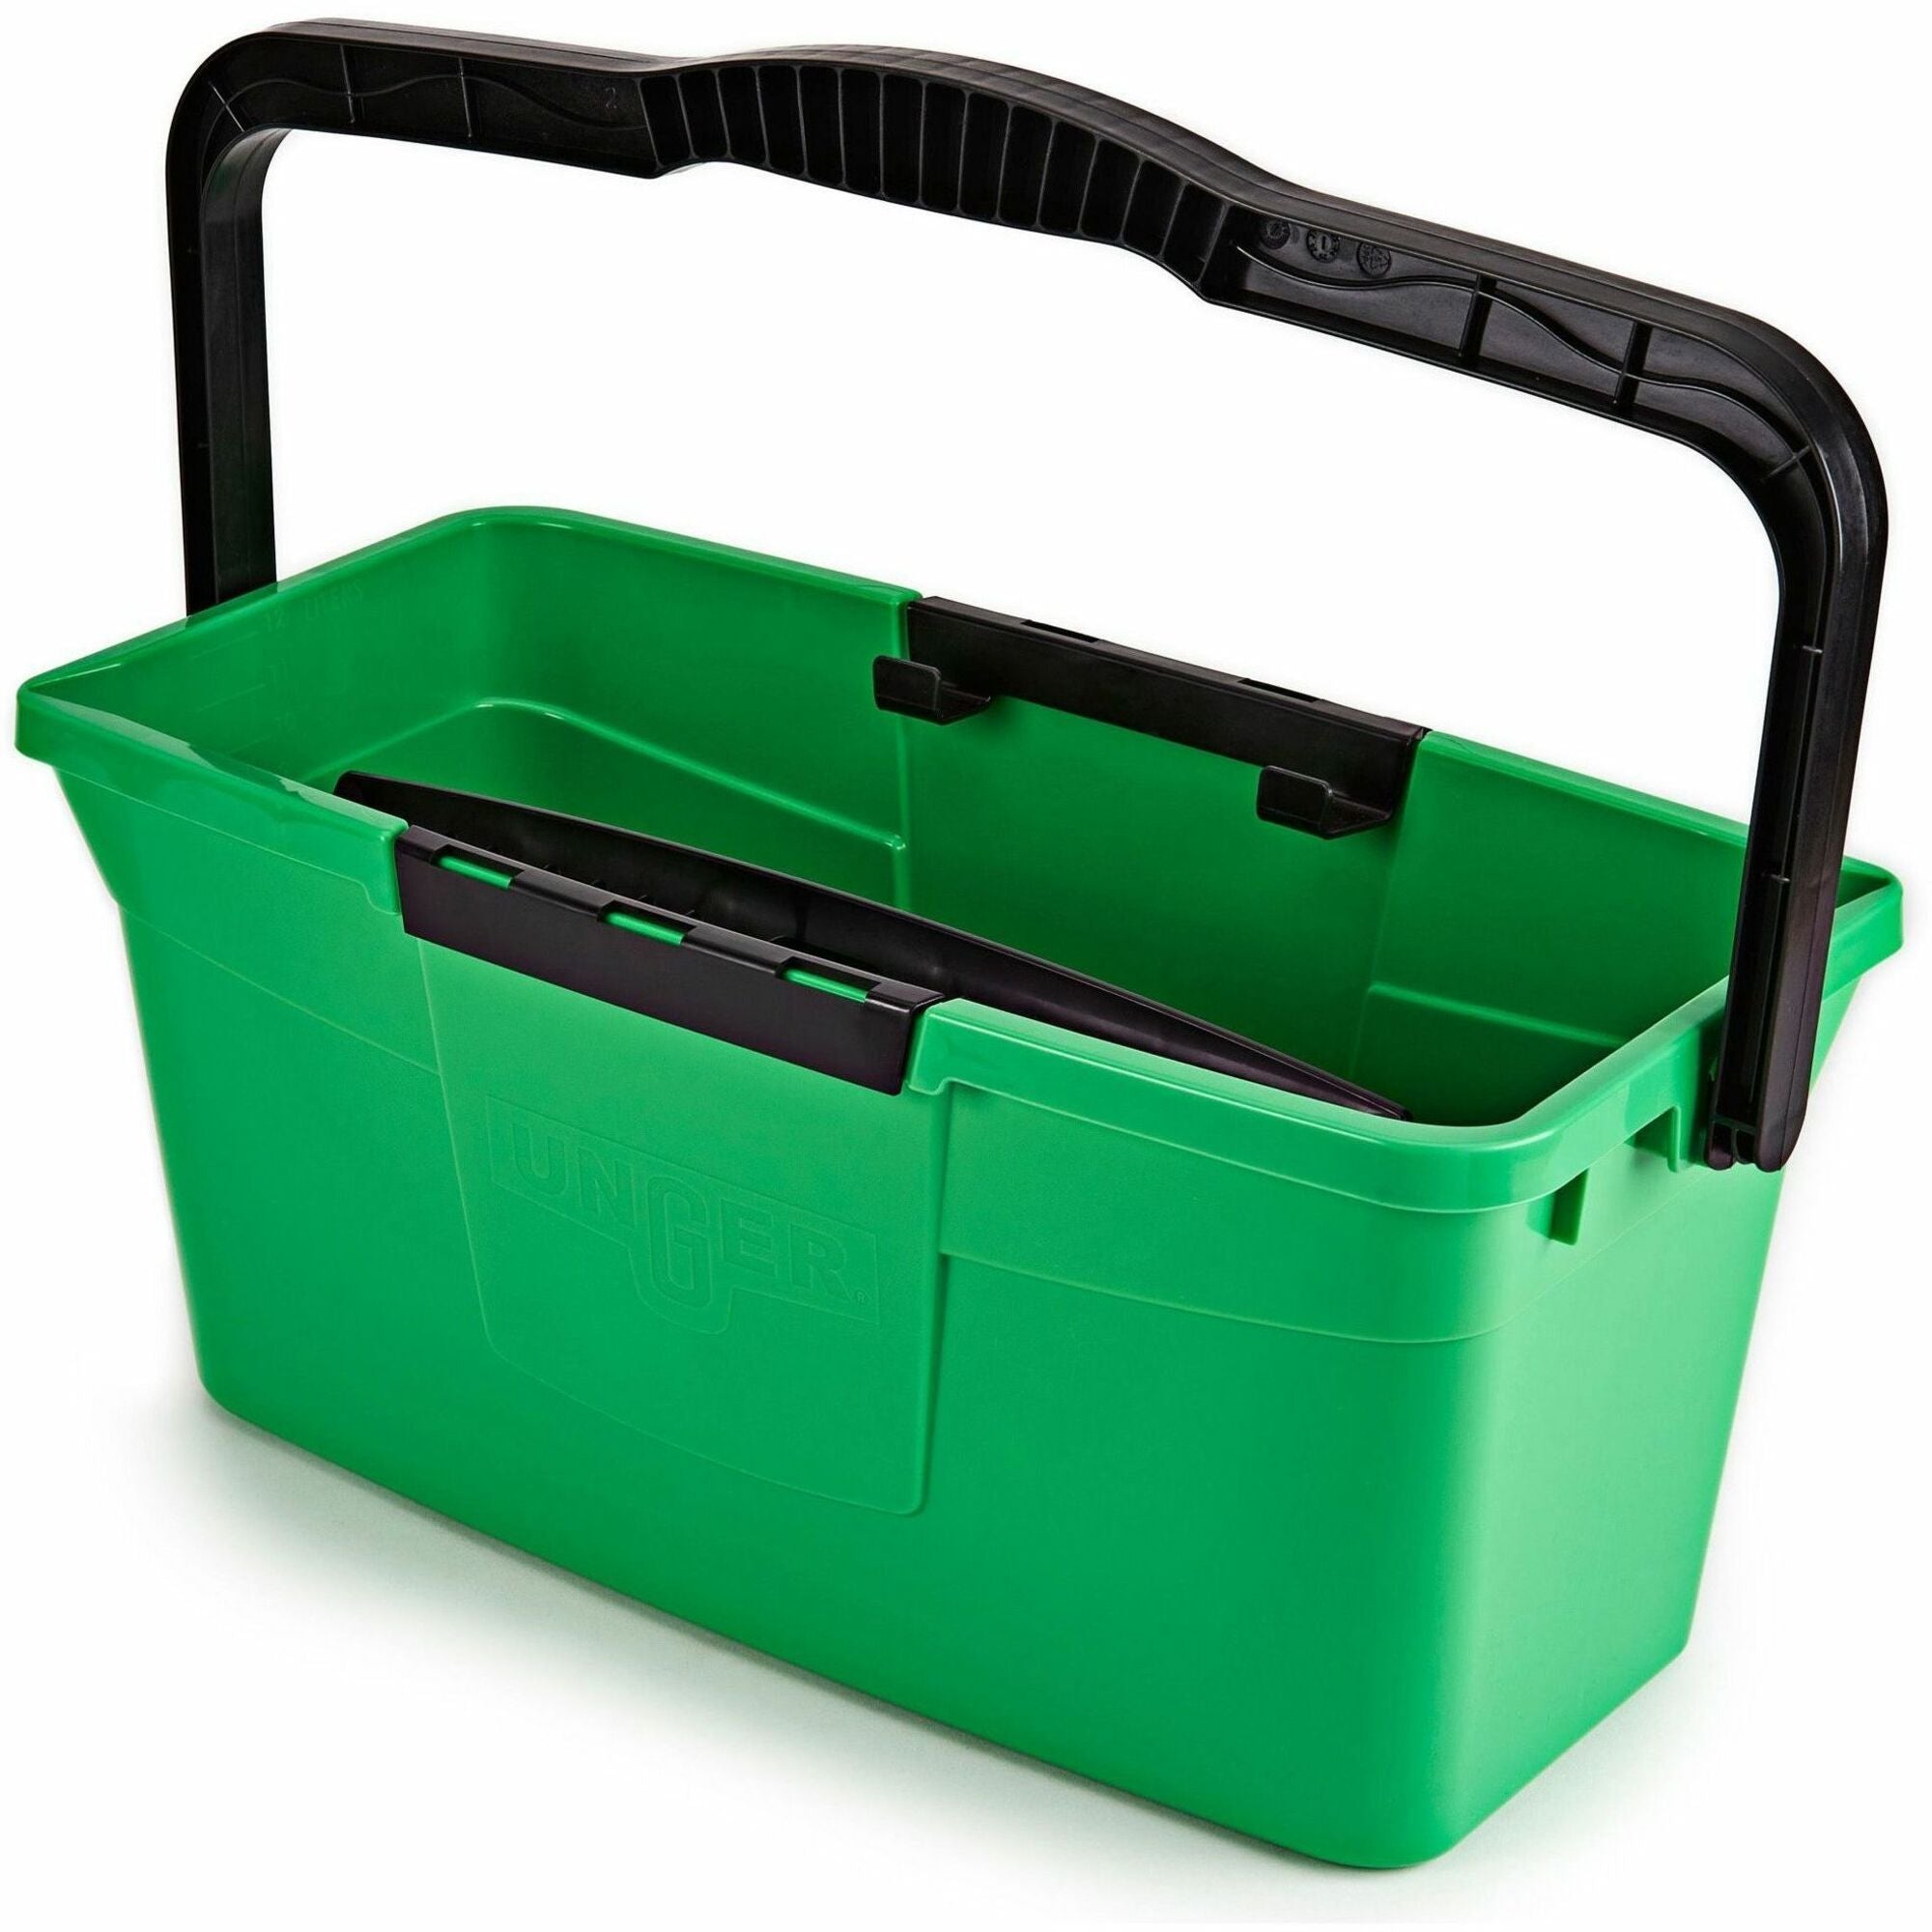 Unger 3 Gallon Pro Bucket - 3 gal - Compact, Ergonomic Grip, Durable, Comfortable Handle, Pour Spout - Green, Black - 10 / Carton